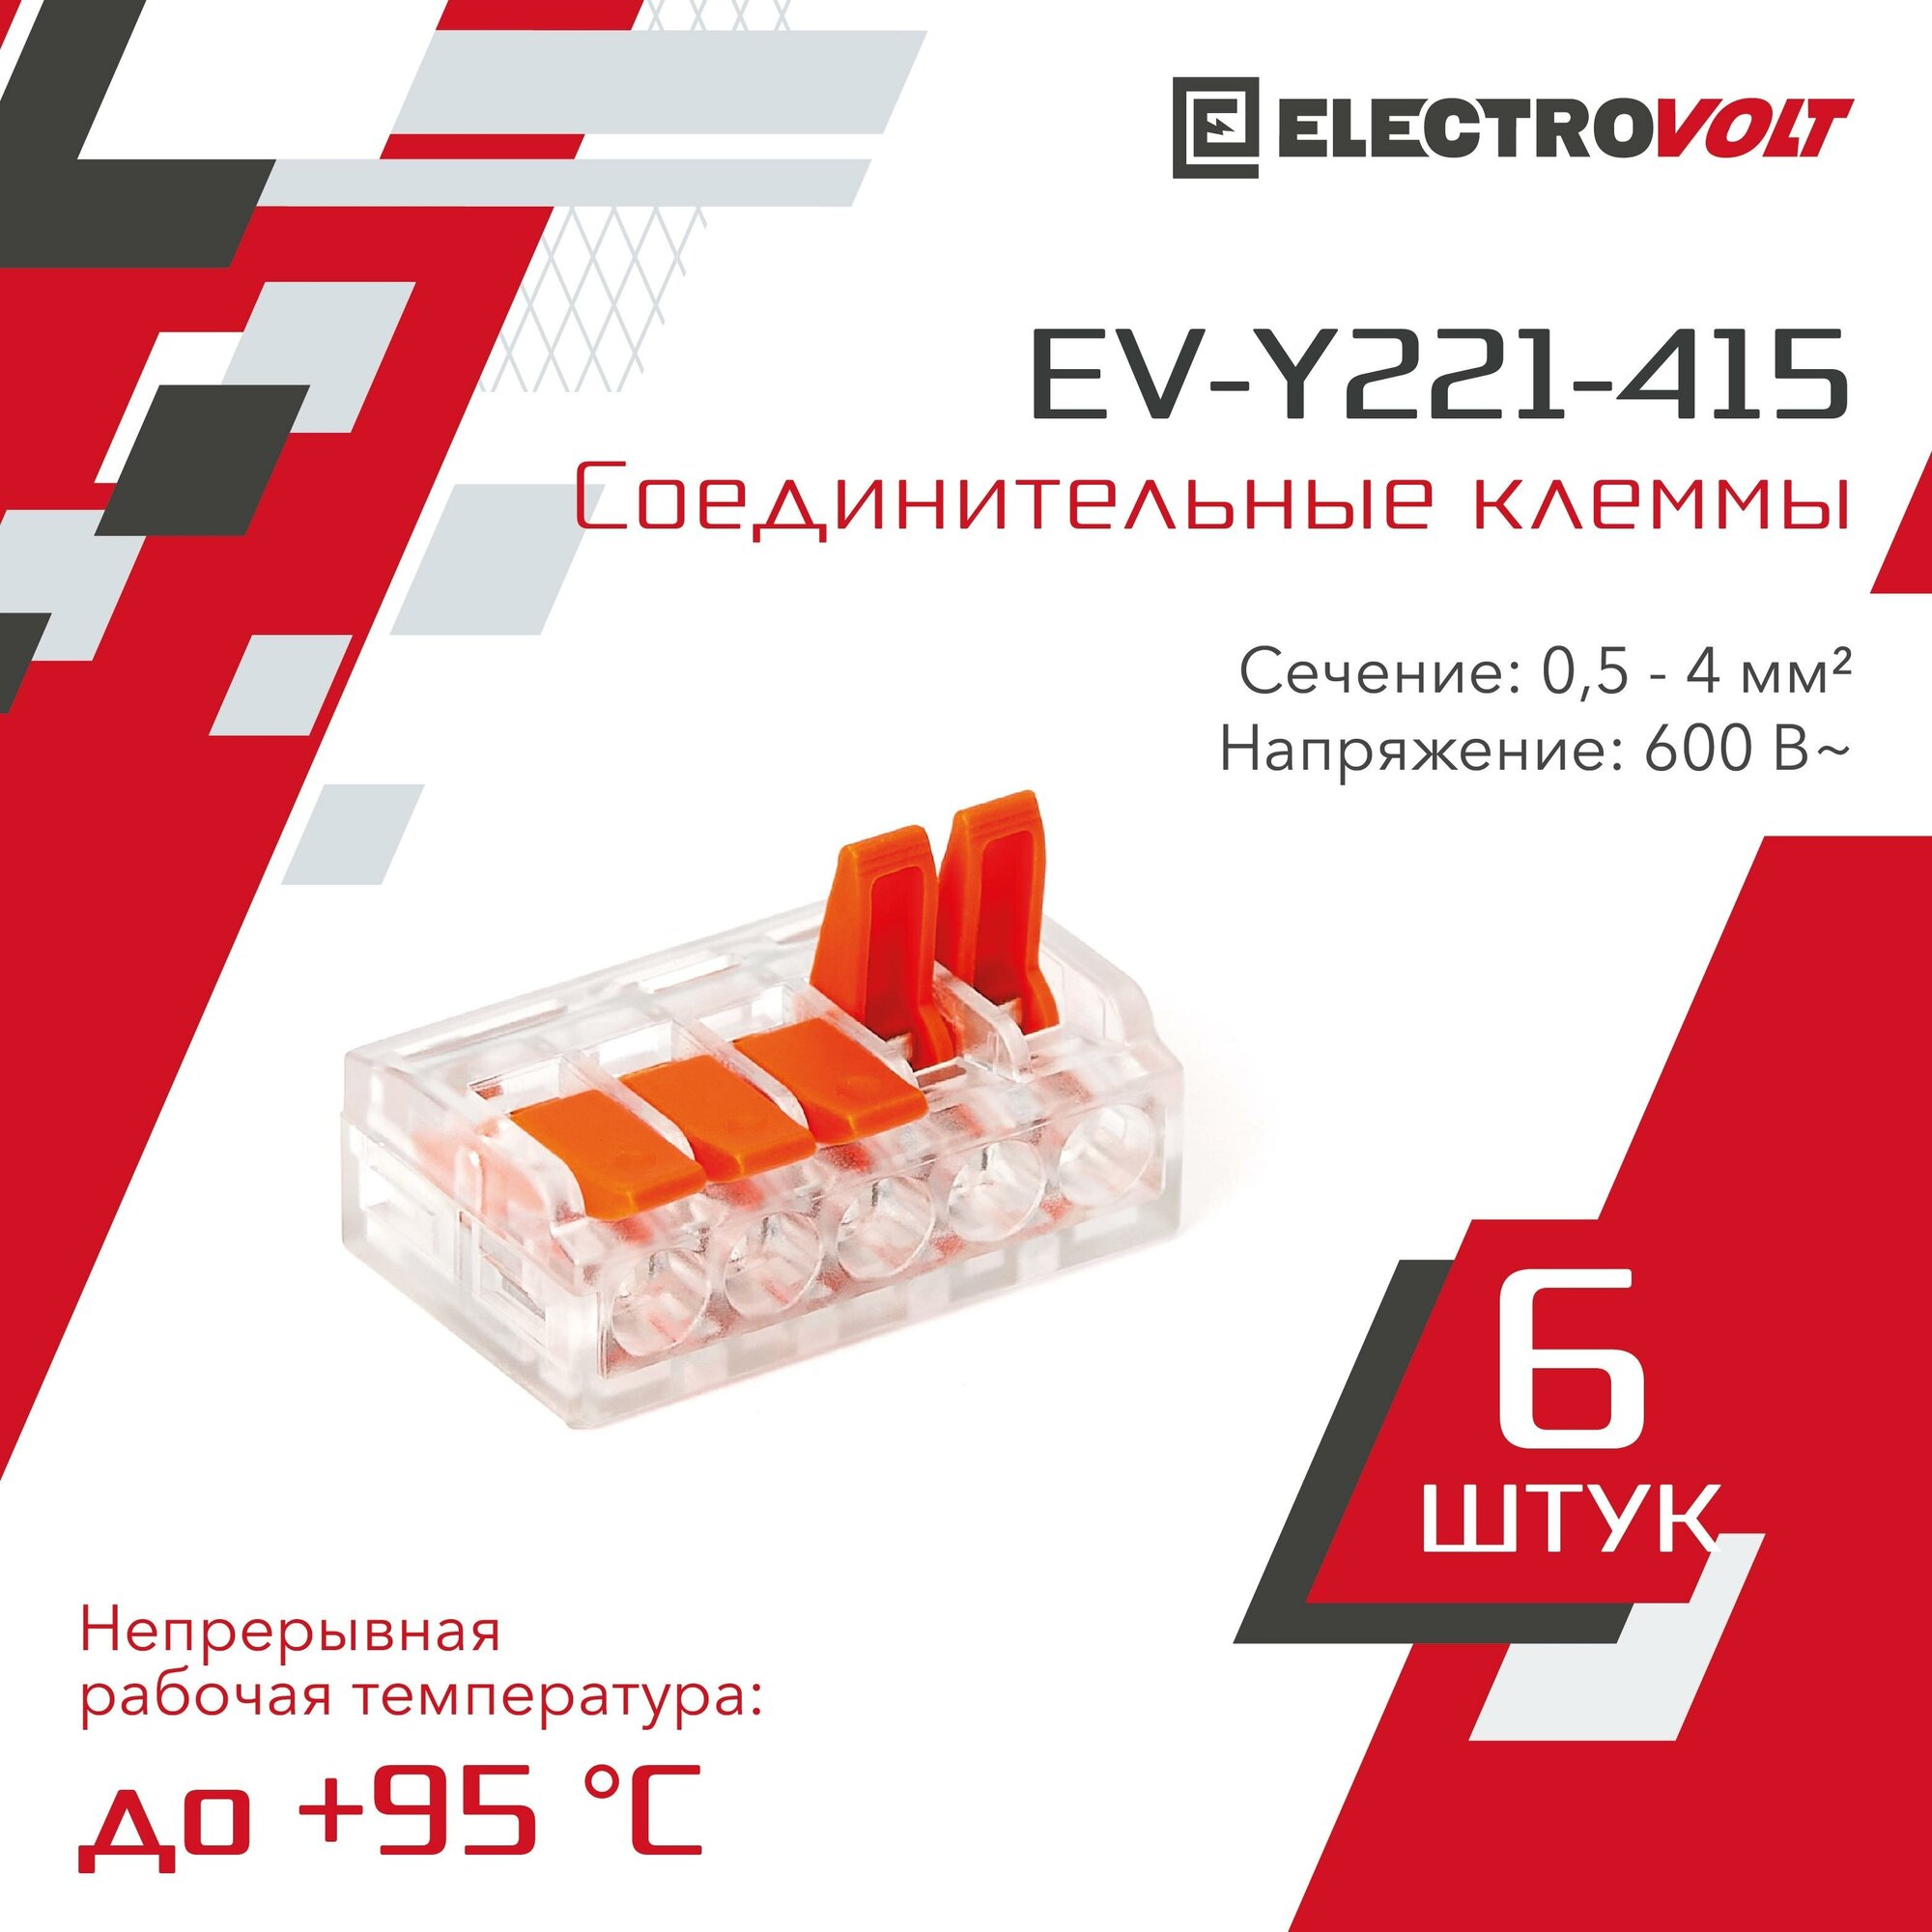 Универсальная 5-и проводная клемма ELECTROVOLT (EV-Y221-415) 6 шт/уп